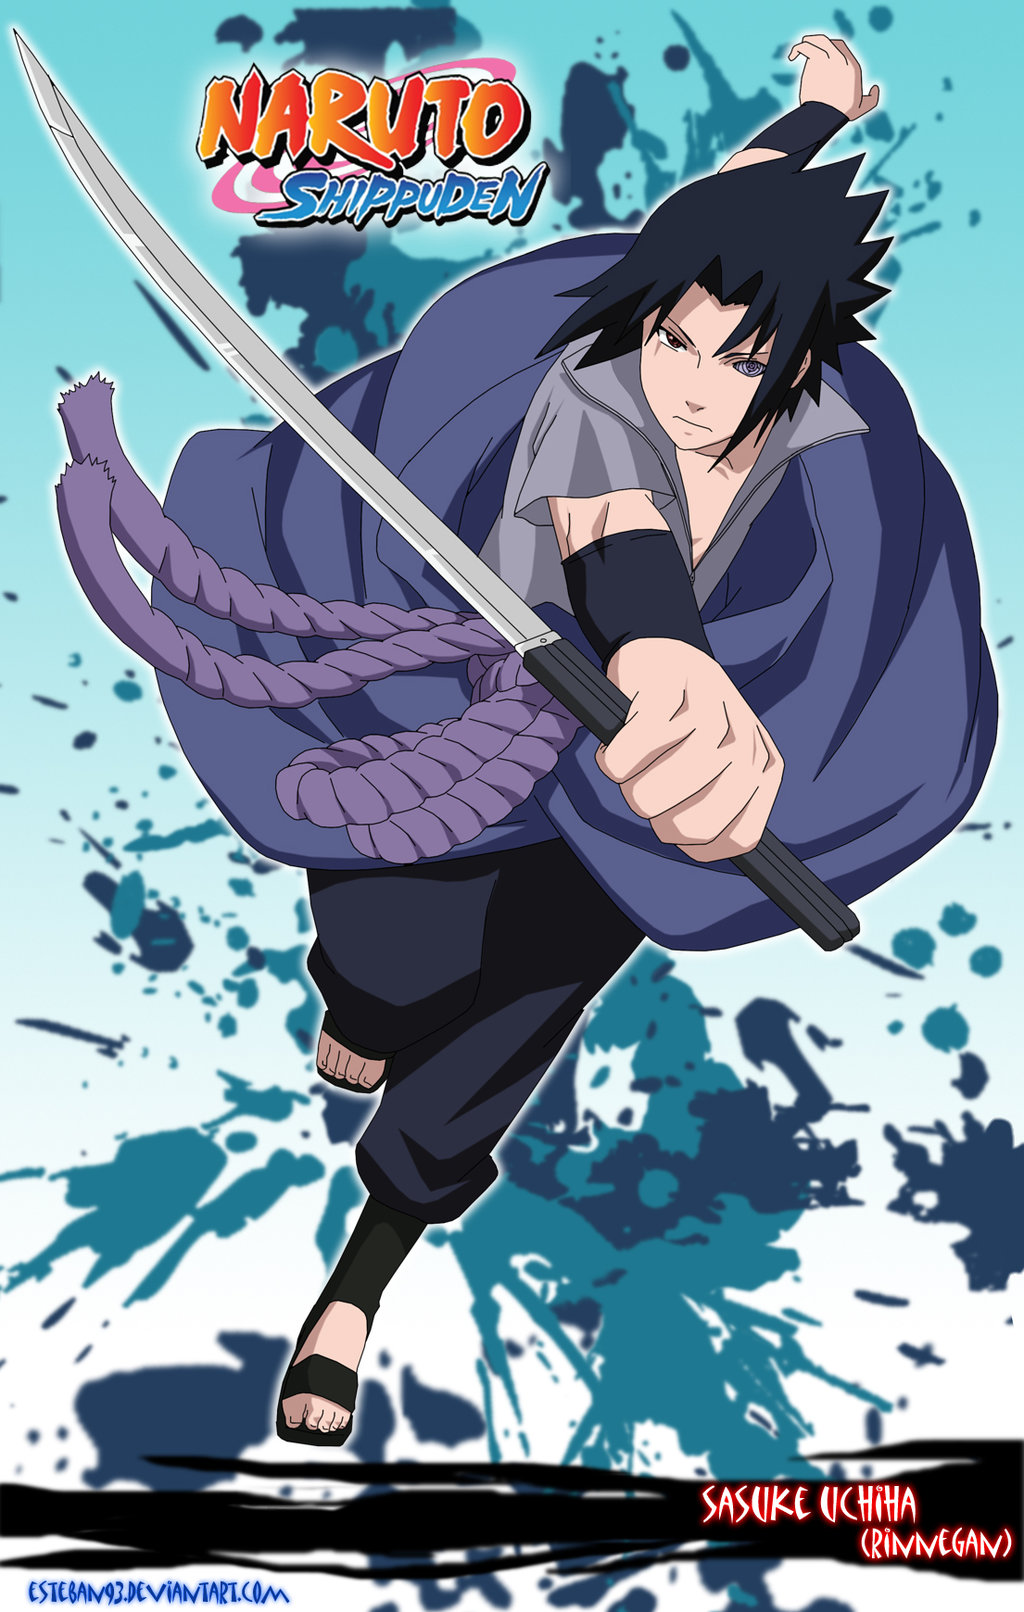 Sasuke Uchiha Rinnegan Naruto Wallpaper